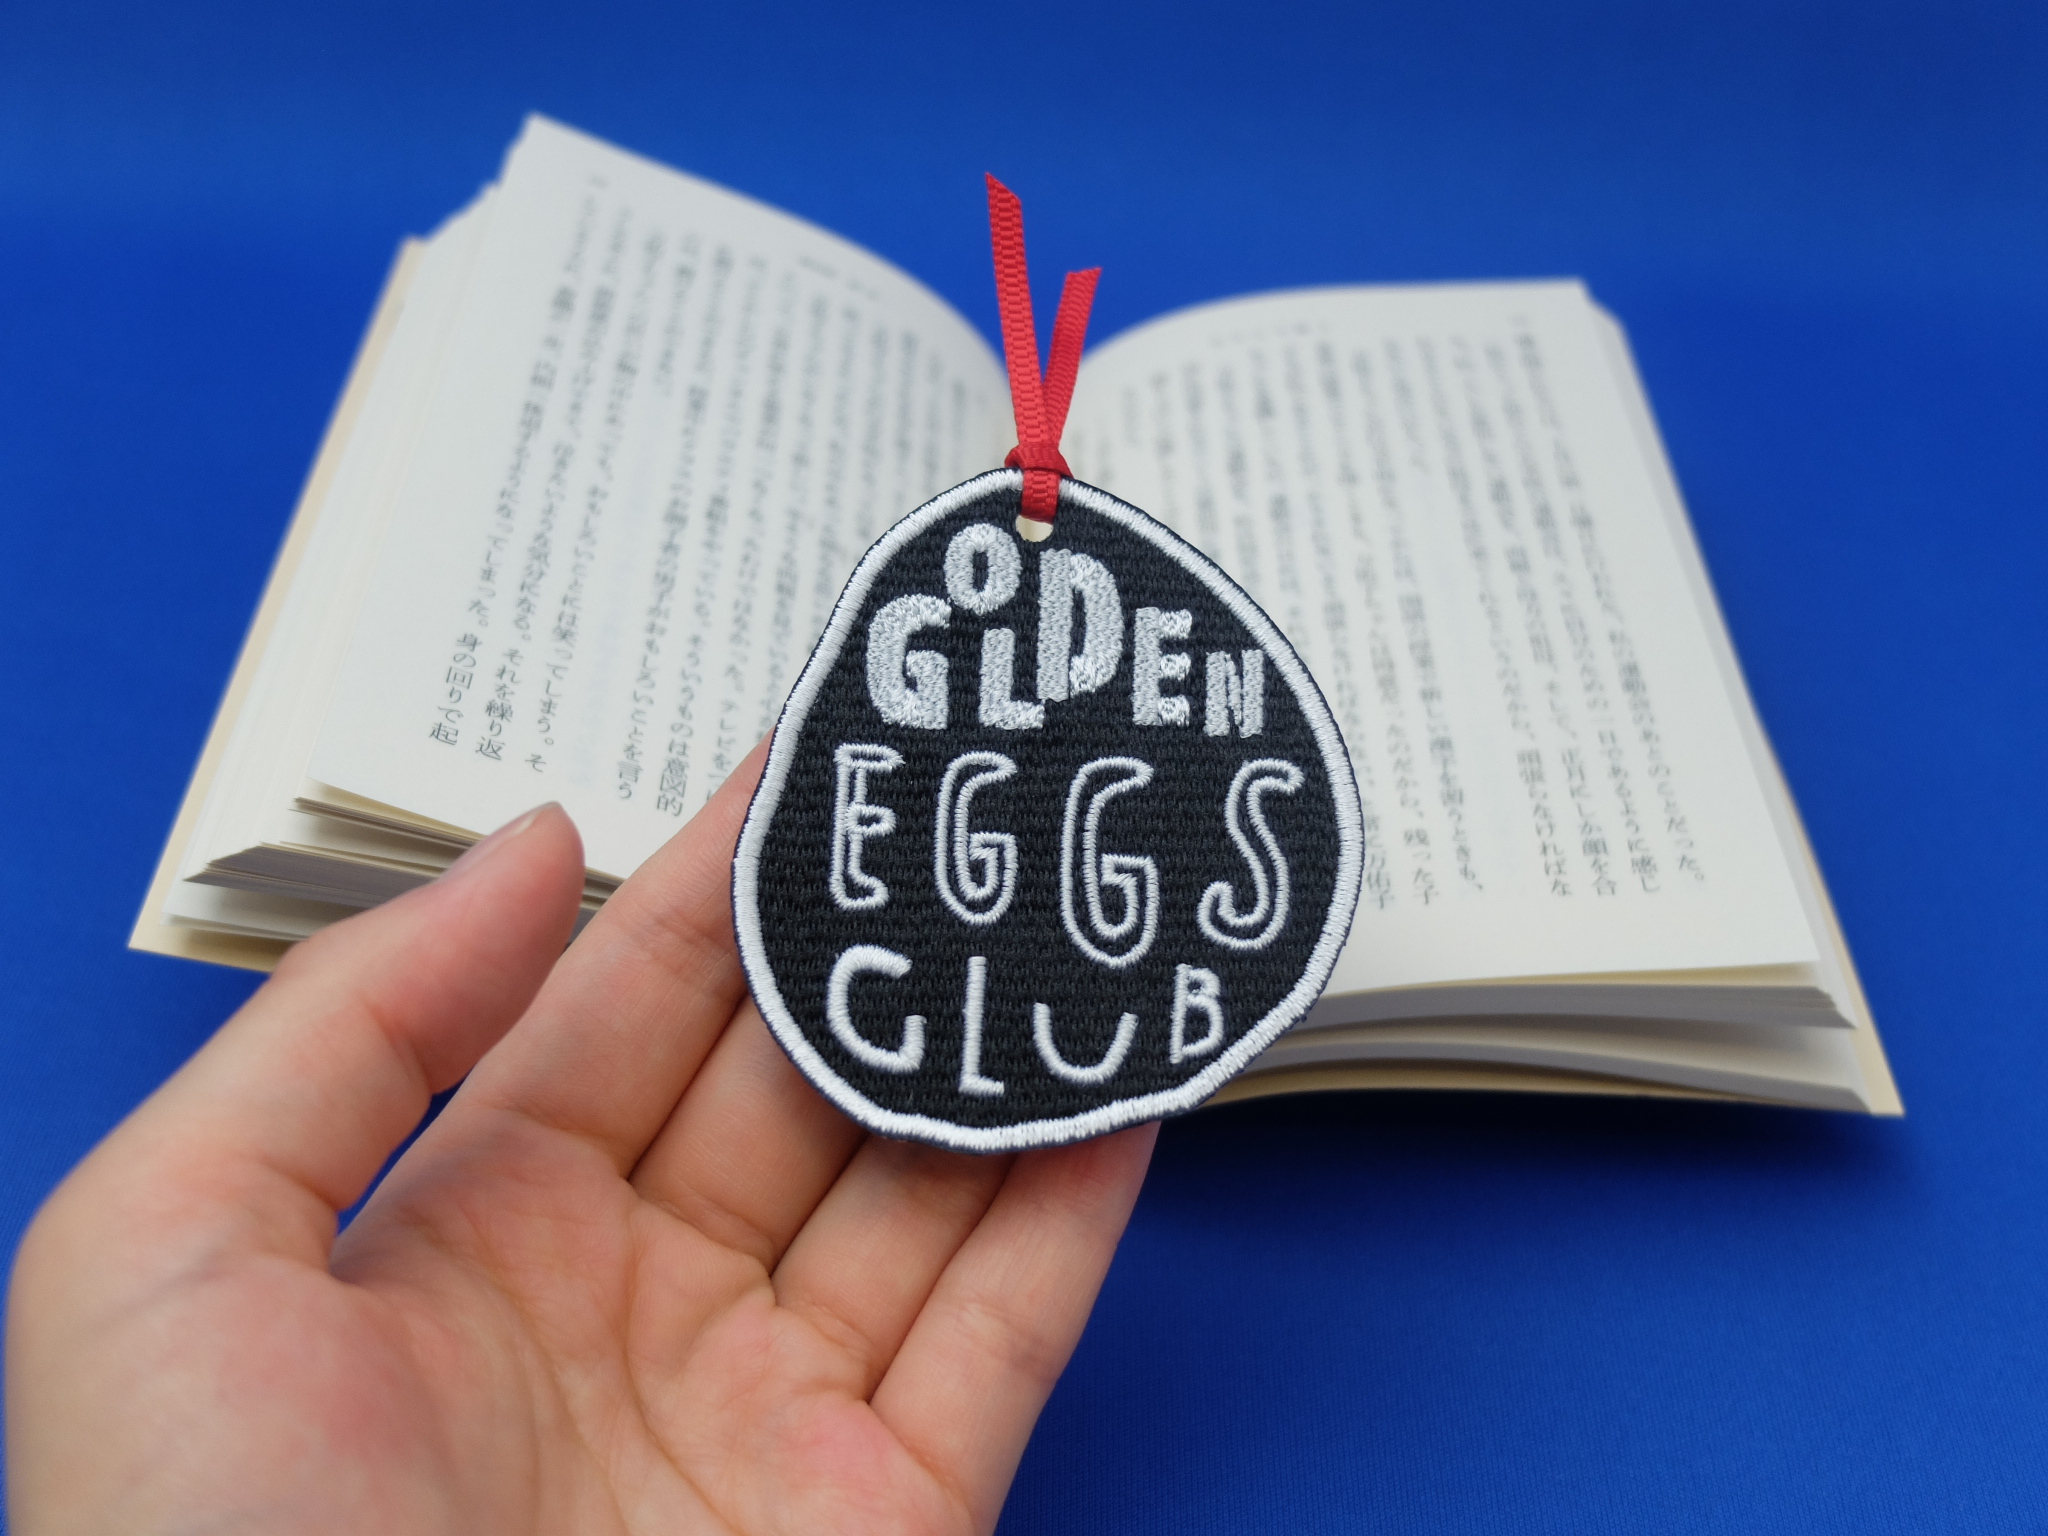 英語教室のロゴマークを刺繍しおりに Golden Eggs Club Color Stitch